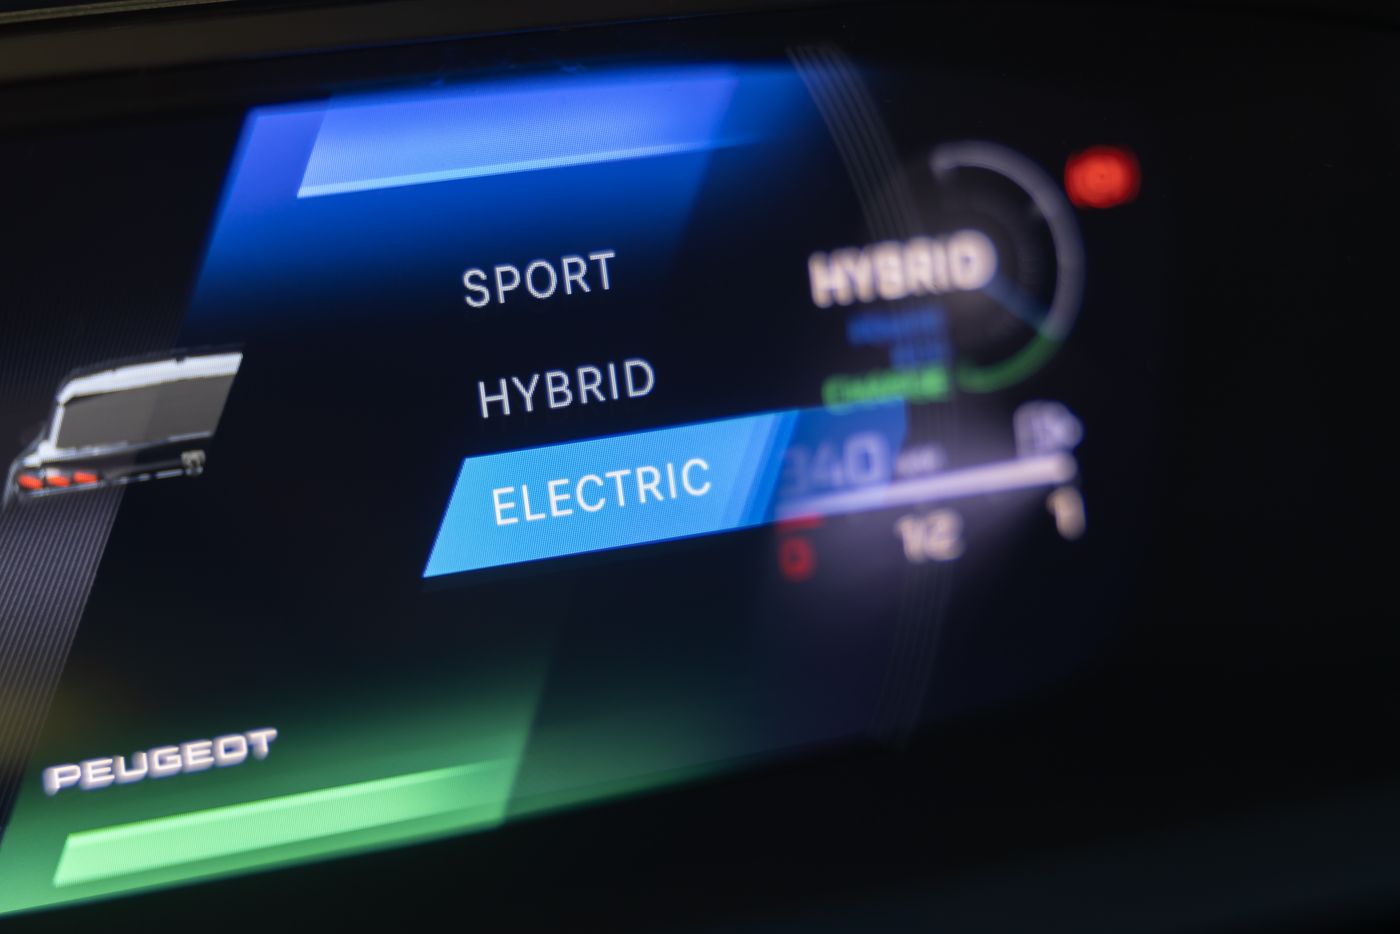 El Peugeot 408 se renueva por completo y ofrece interesantes variantes electrificadas. Ya tiene precio y las primeras unidades las veremos el año que viene